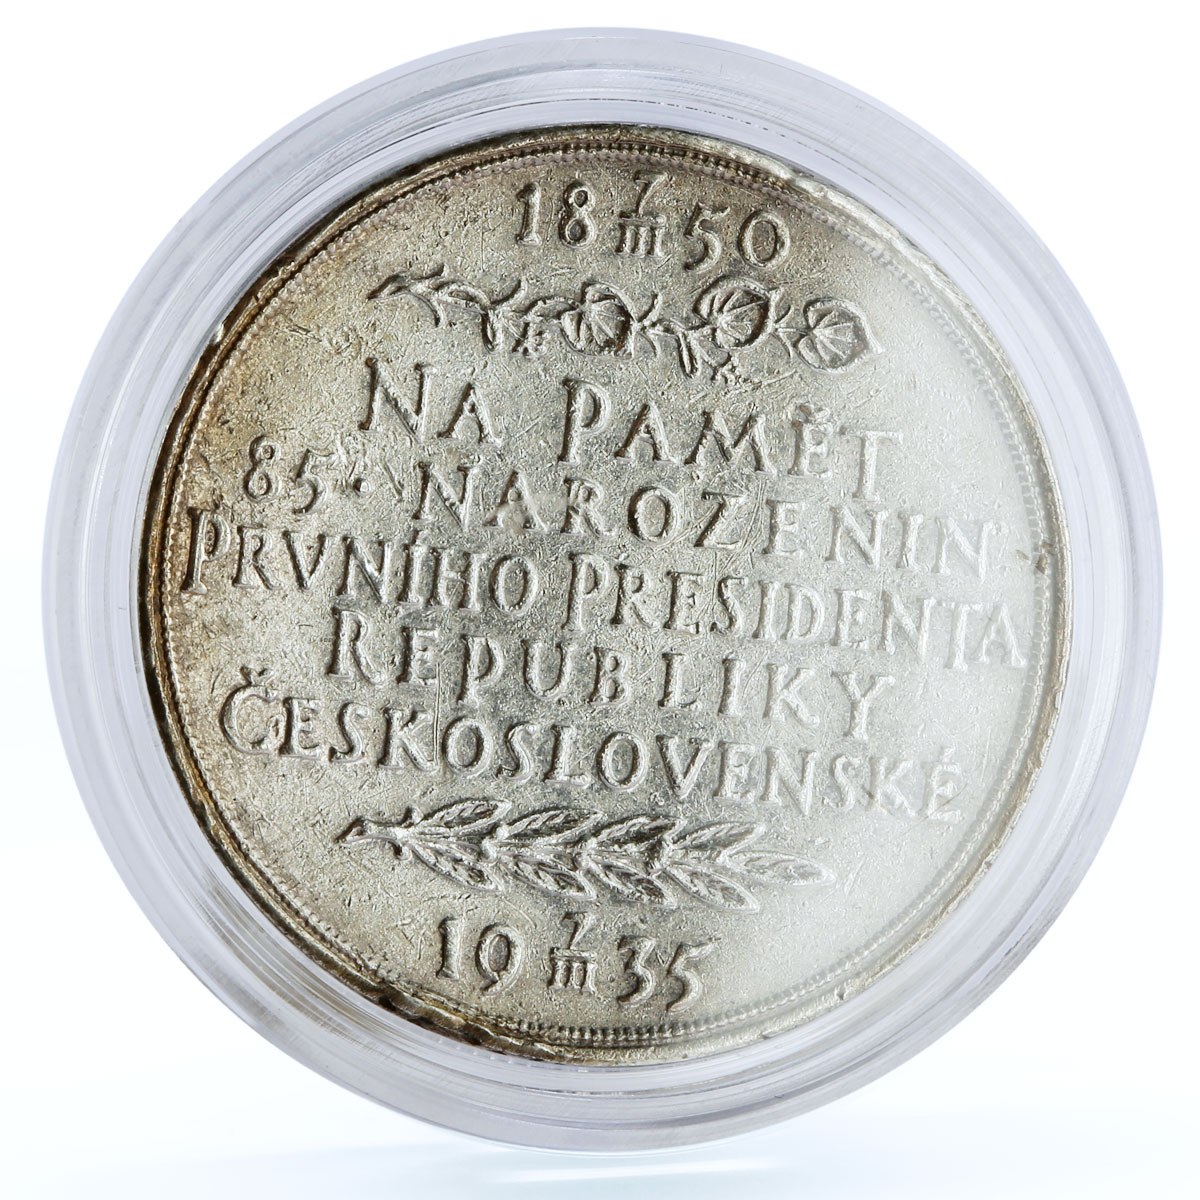 Czechoslovakia 85th Anniversary 1st President Tomas Masaryk Ag medal coin 1935